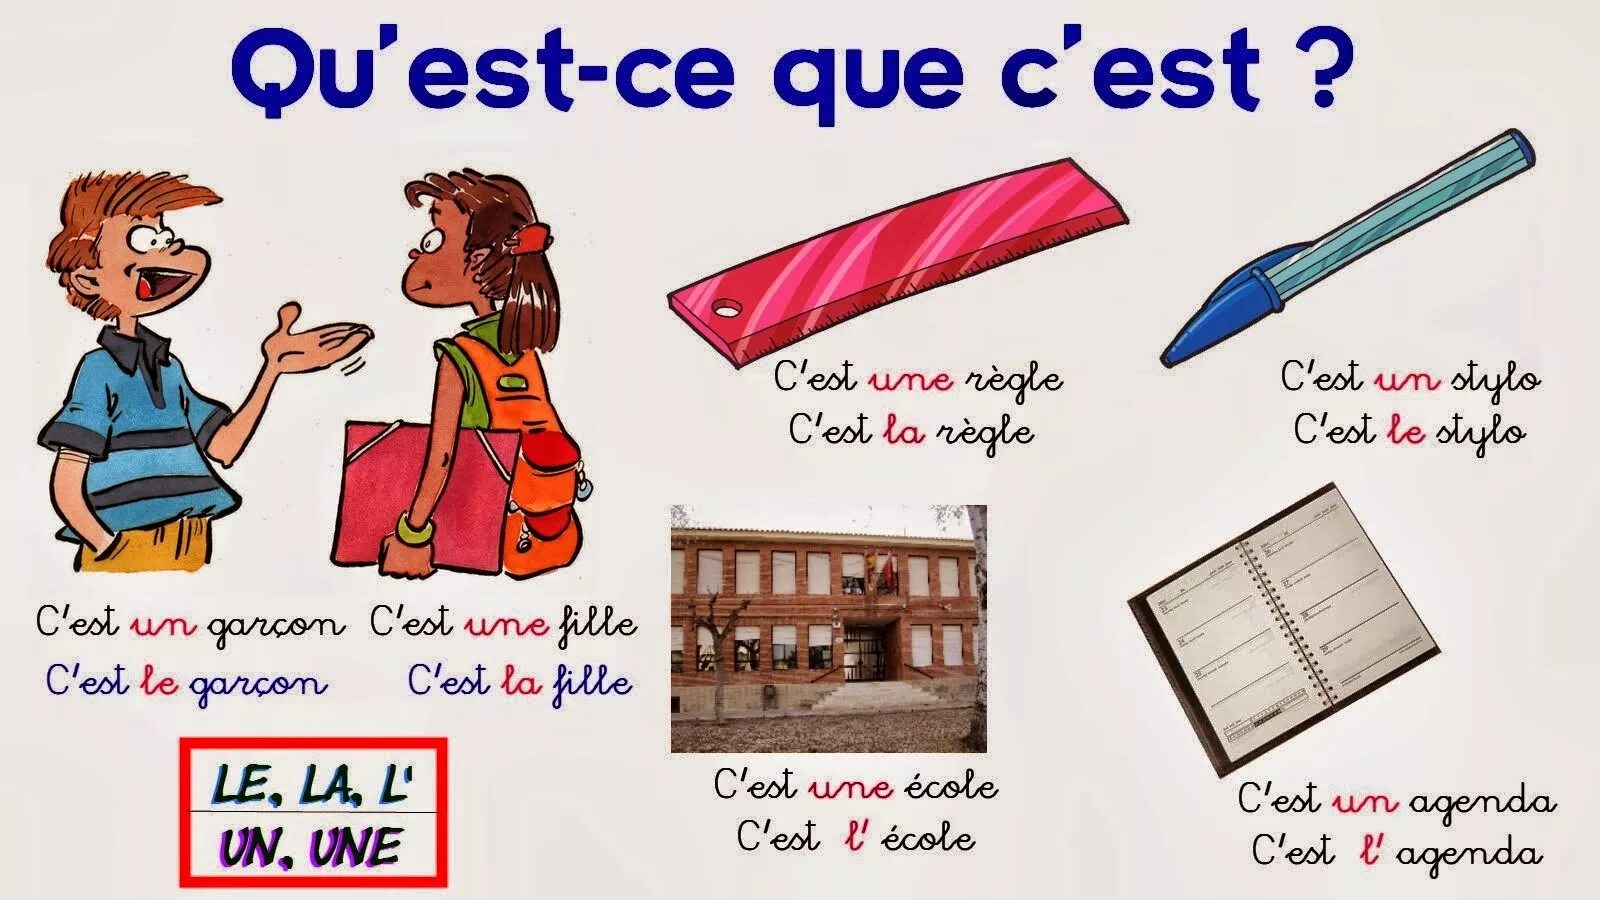 Уроки по французскому языку. Французский язык c'est ...ce sont. C'est ce sont во французском. C'est il est во французском.